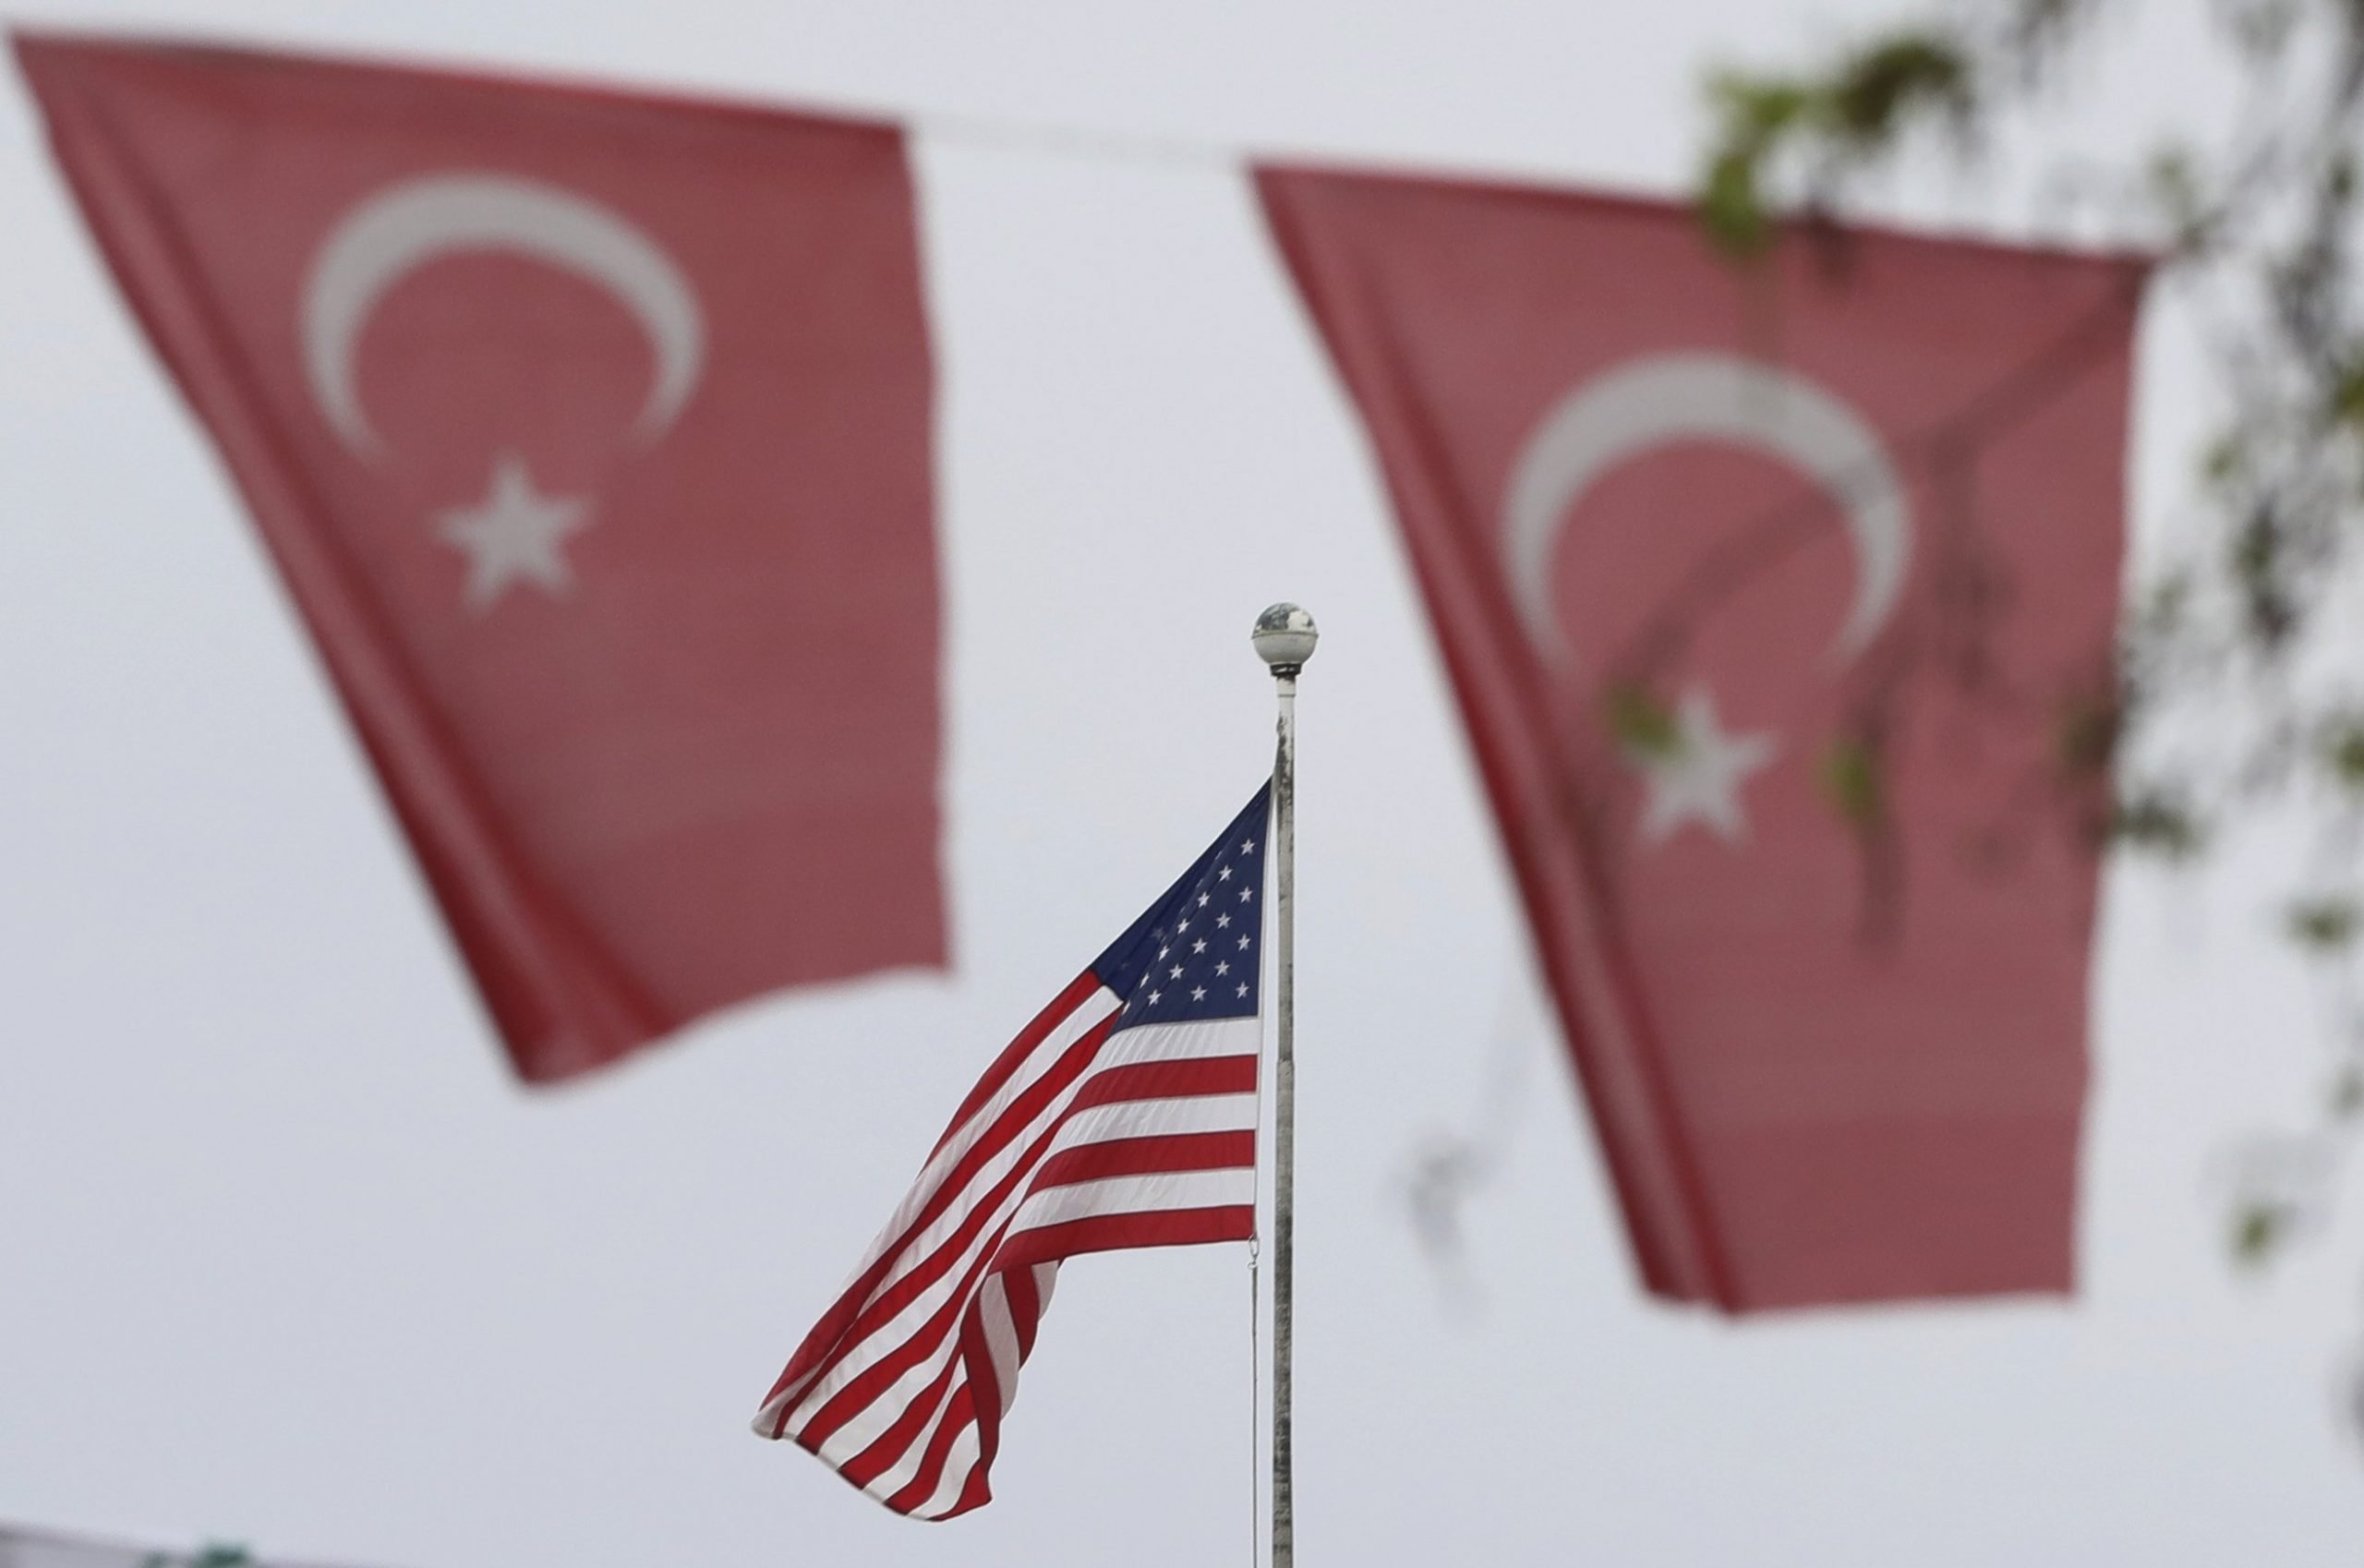 Μάρκος Τρούλης: O τουρκικός αναθεωρητισμός δεν καταδικάζεται από τις ΗΠΑ